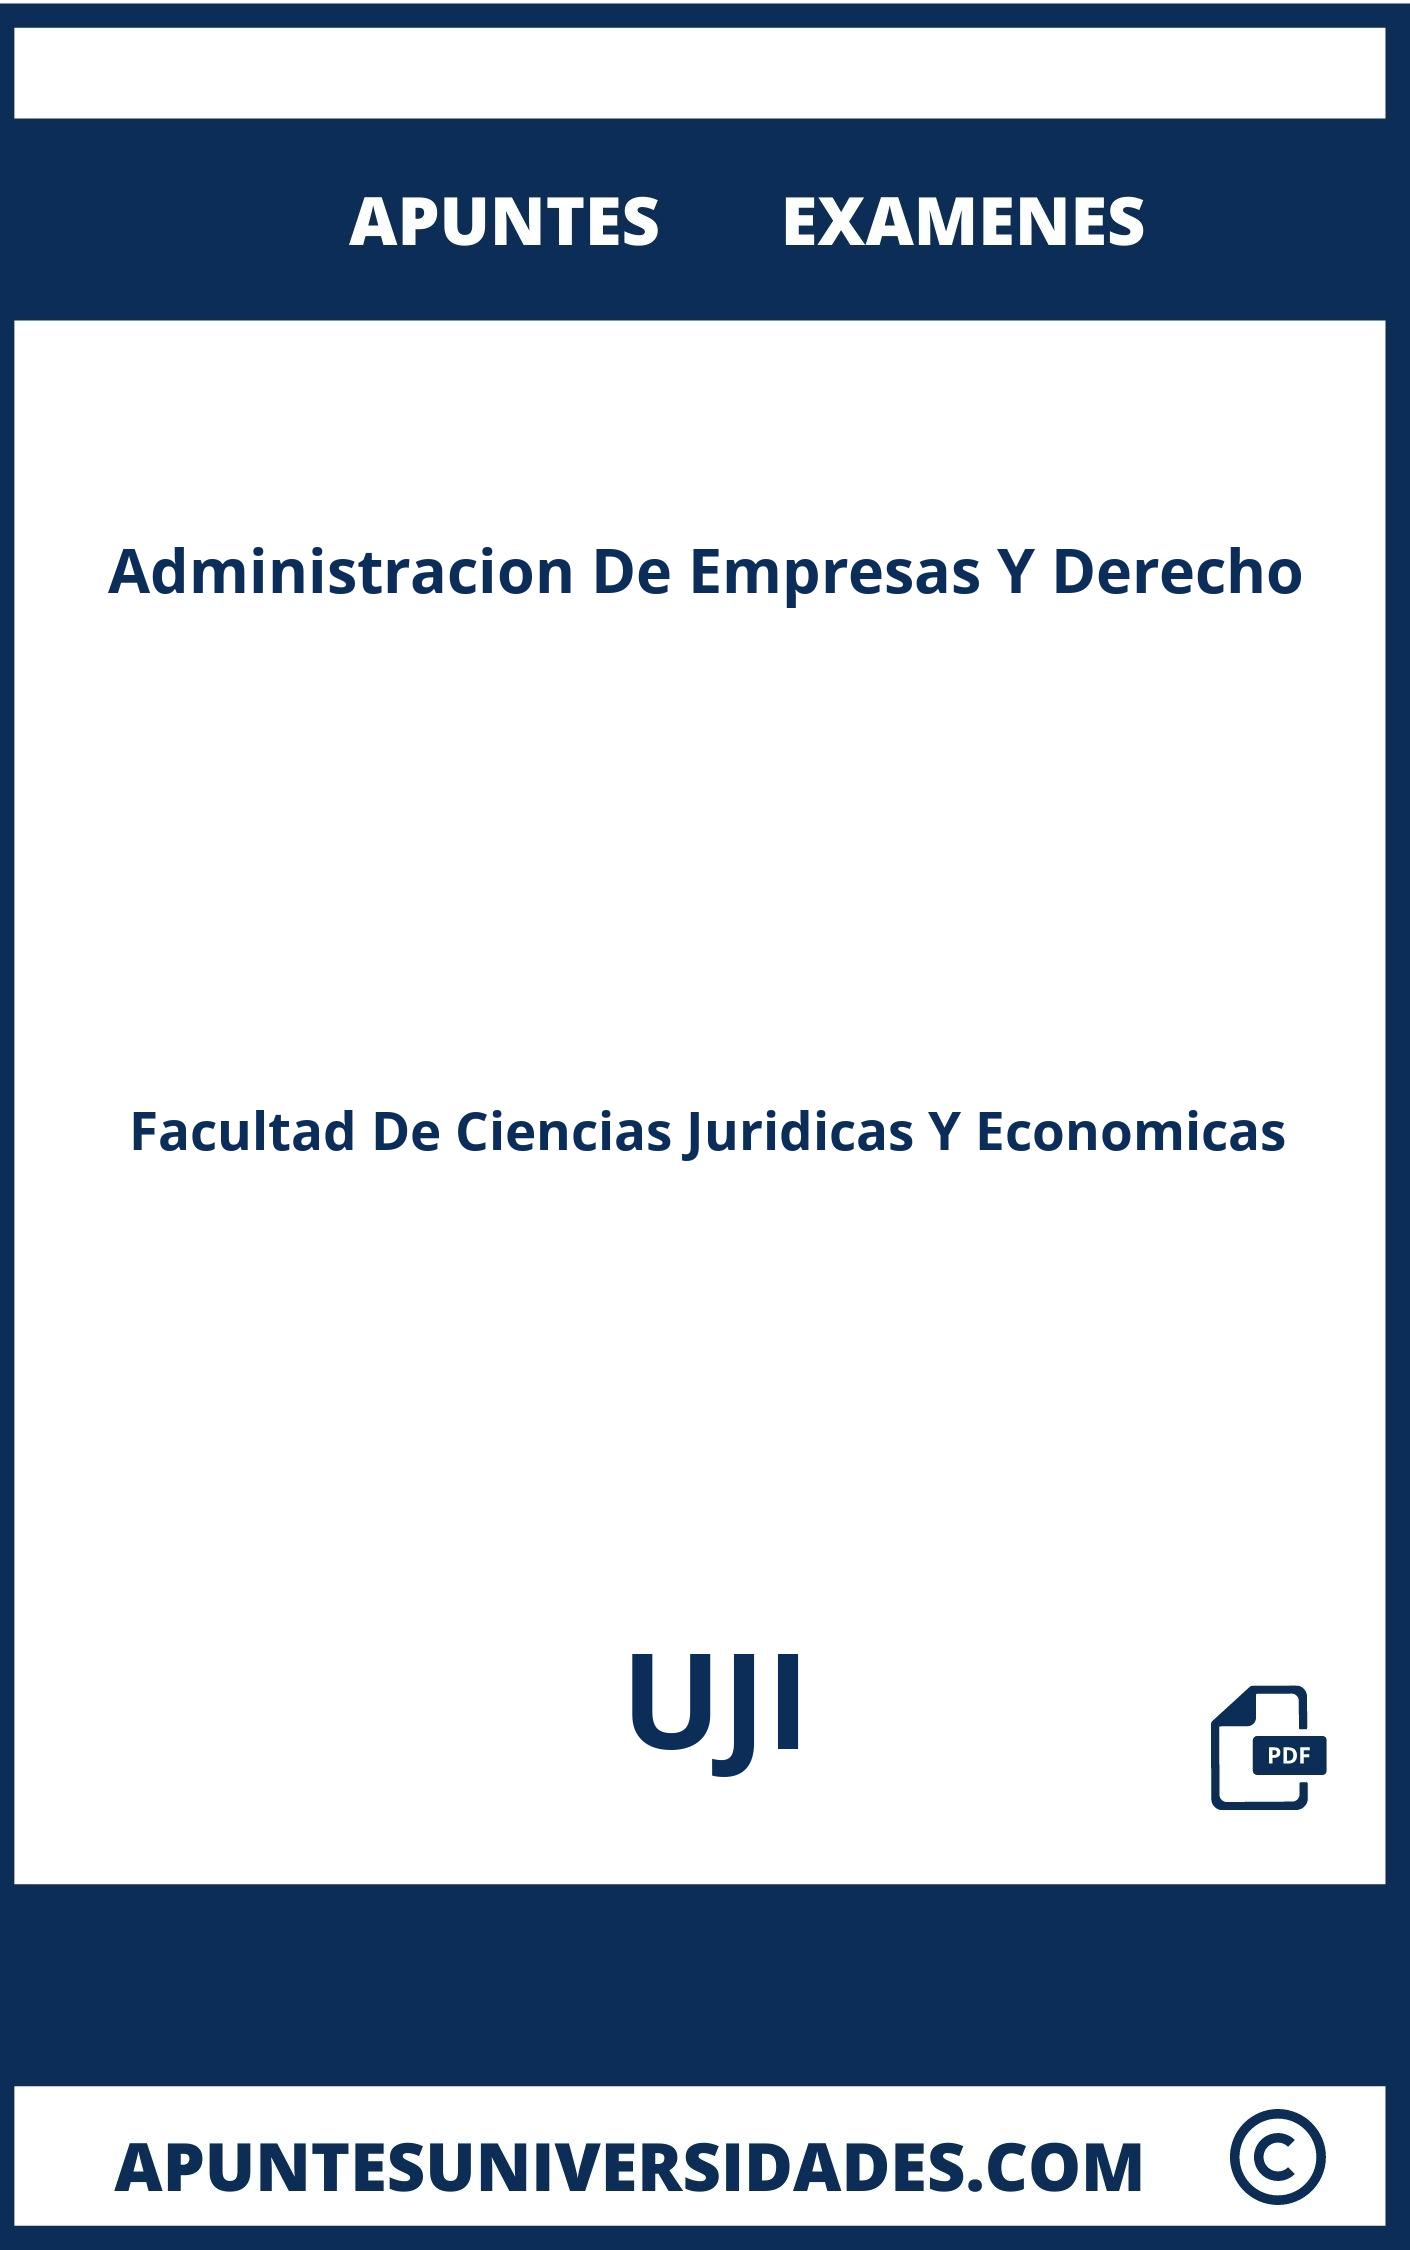 Administracion De Empresas Y Derecho UJI Examenes Apuntes